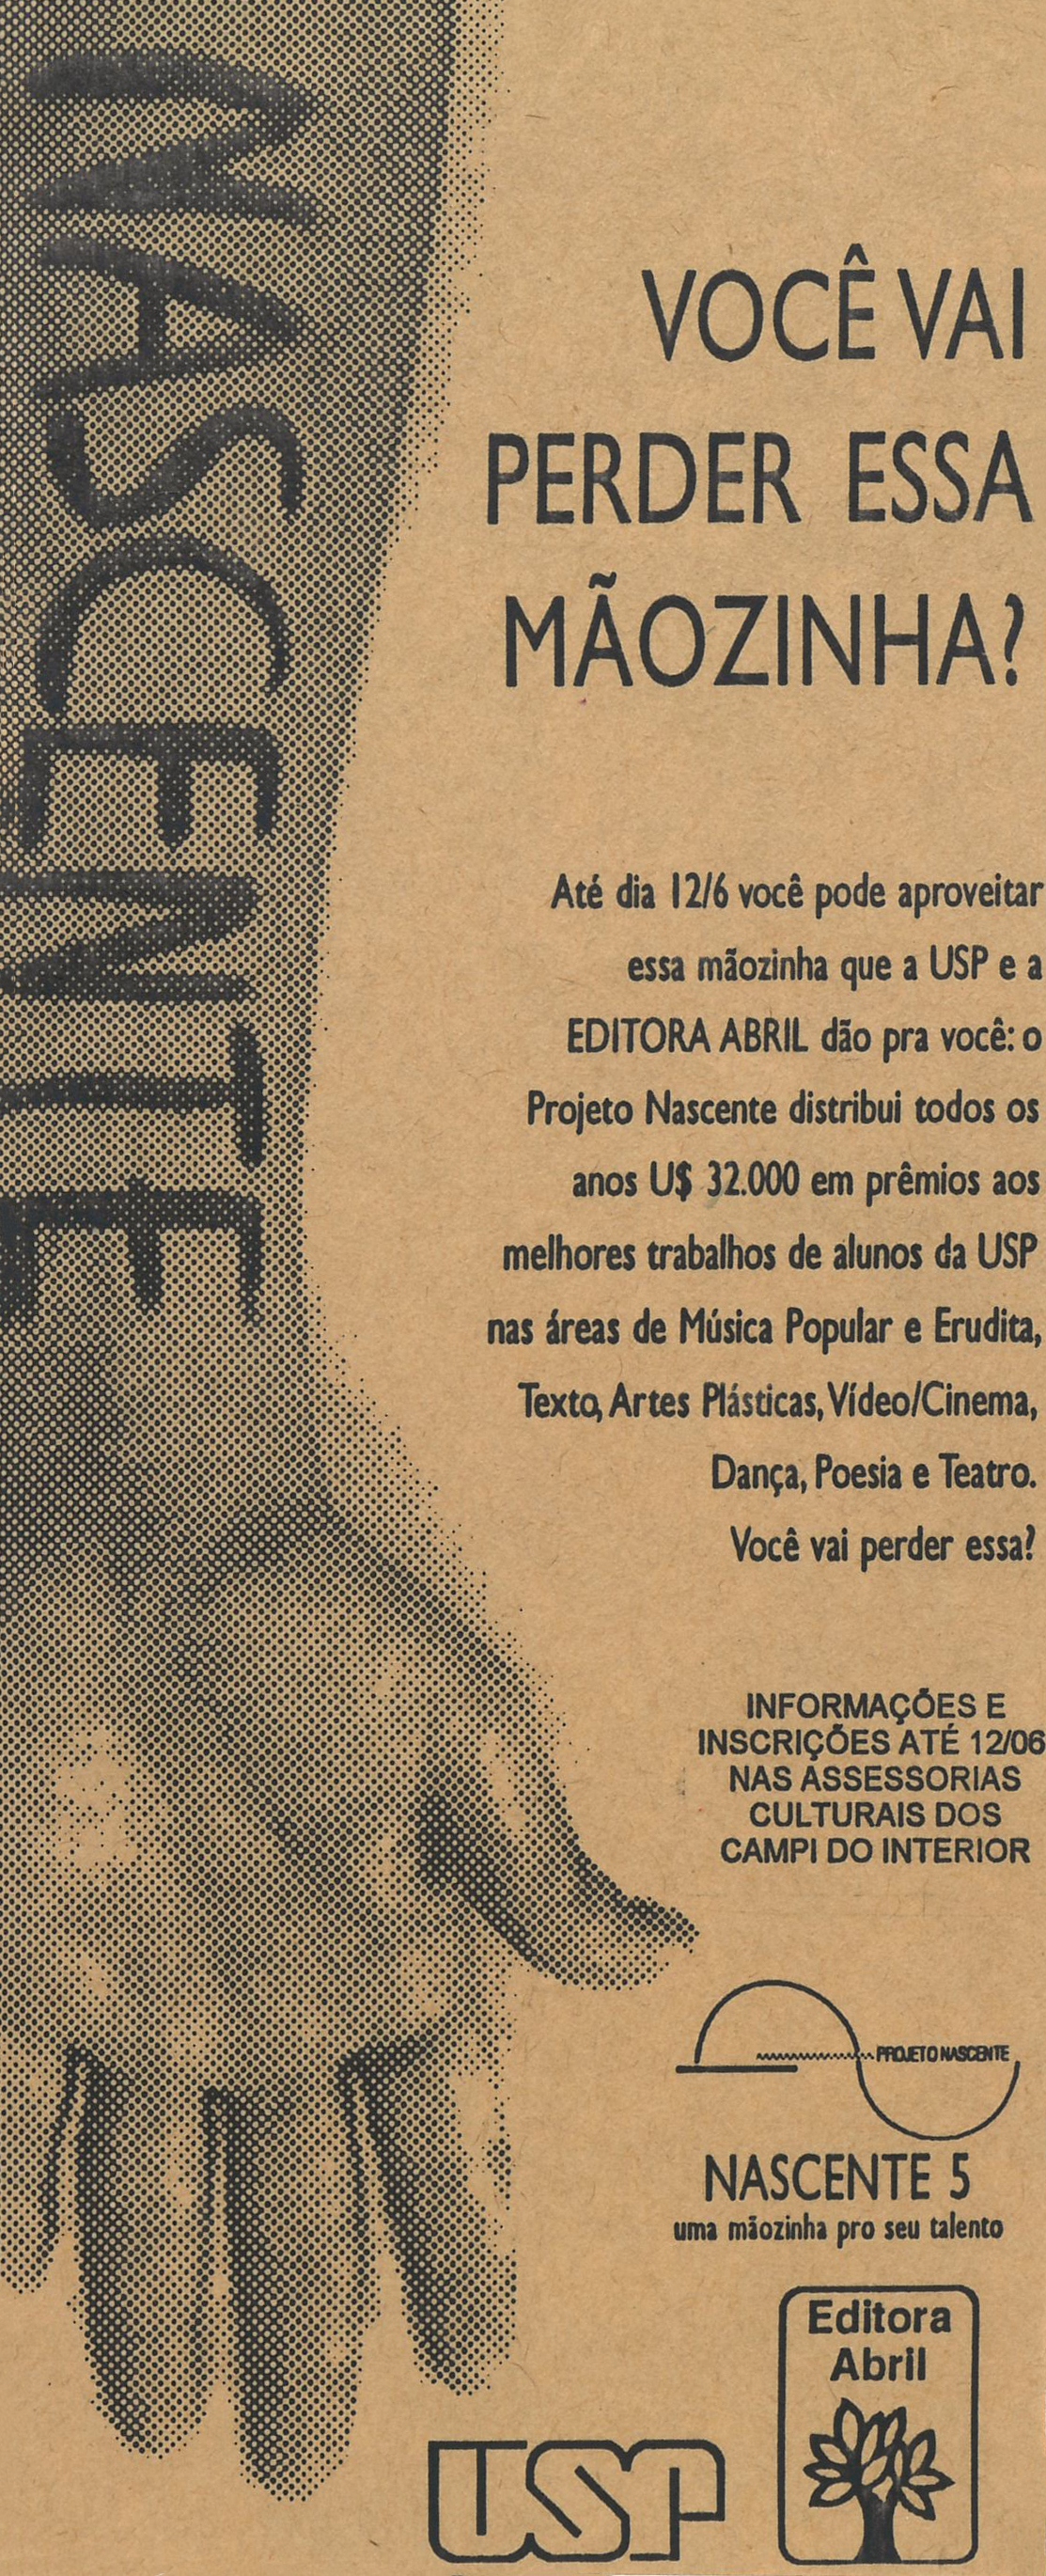 nascente conheca a historia do concurso artistico da usp flyer campi interior 05 1995 nascente